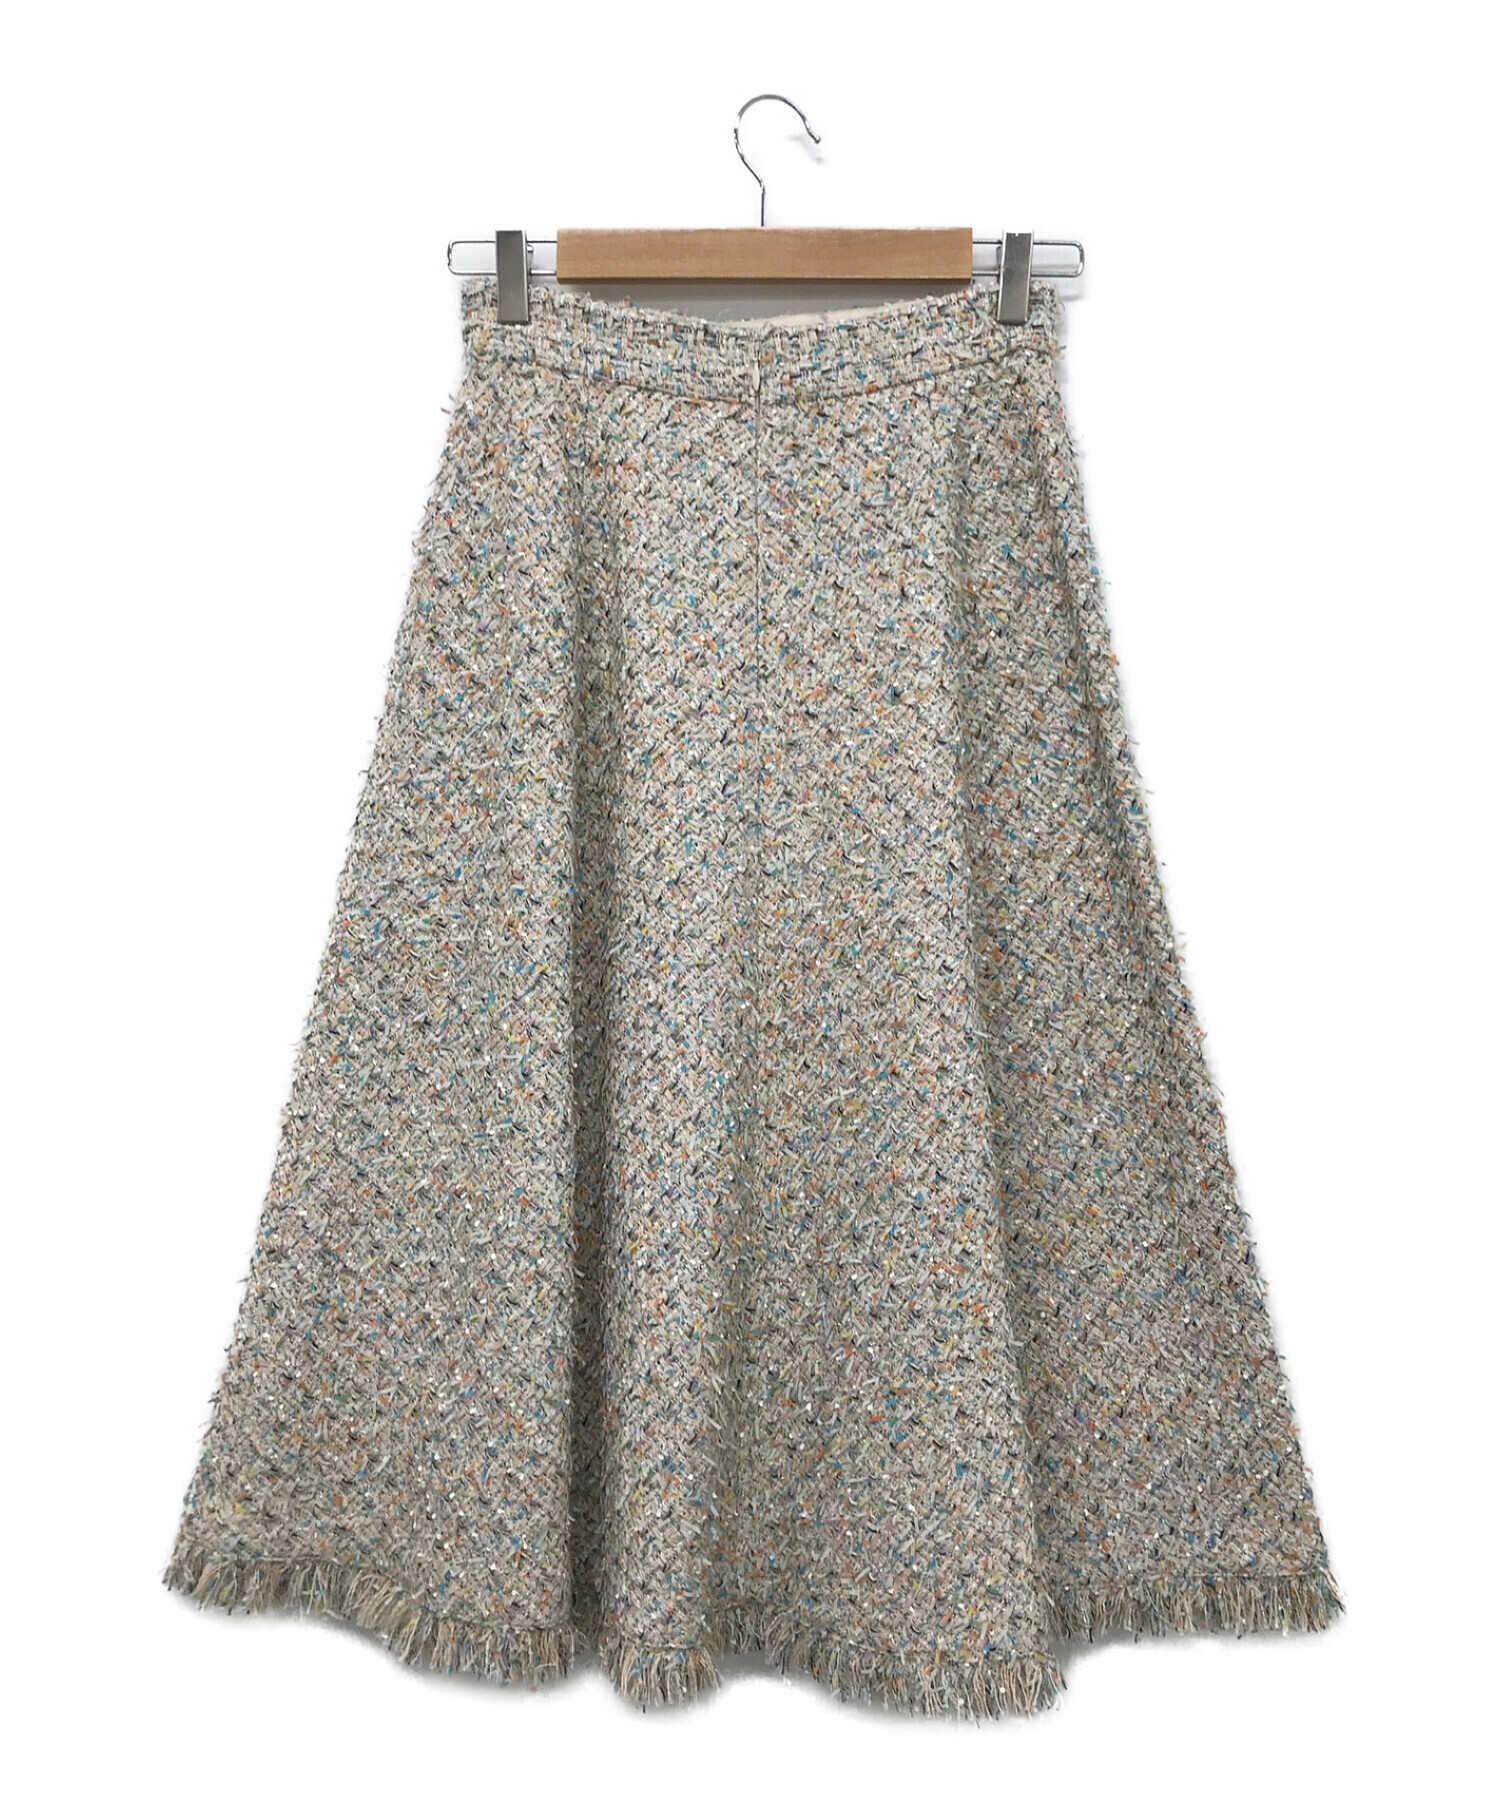 ANAYI (アナイ) カラーミックスツィードフレアスカート サイズ:36 未使用品